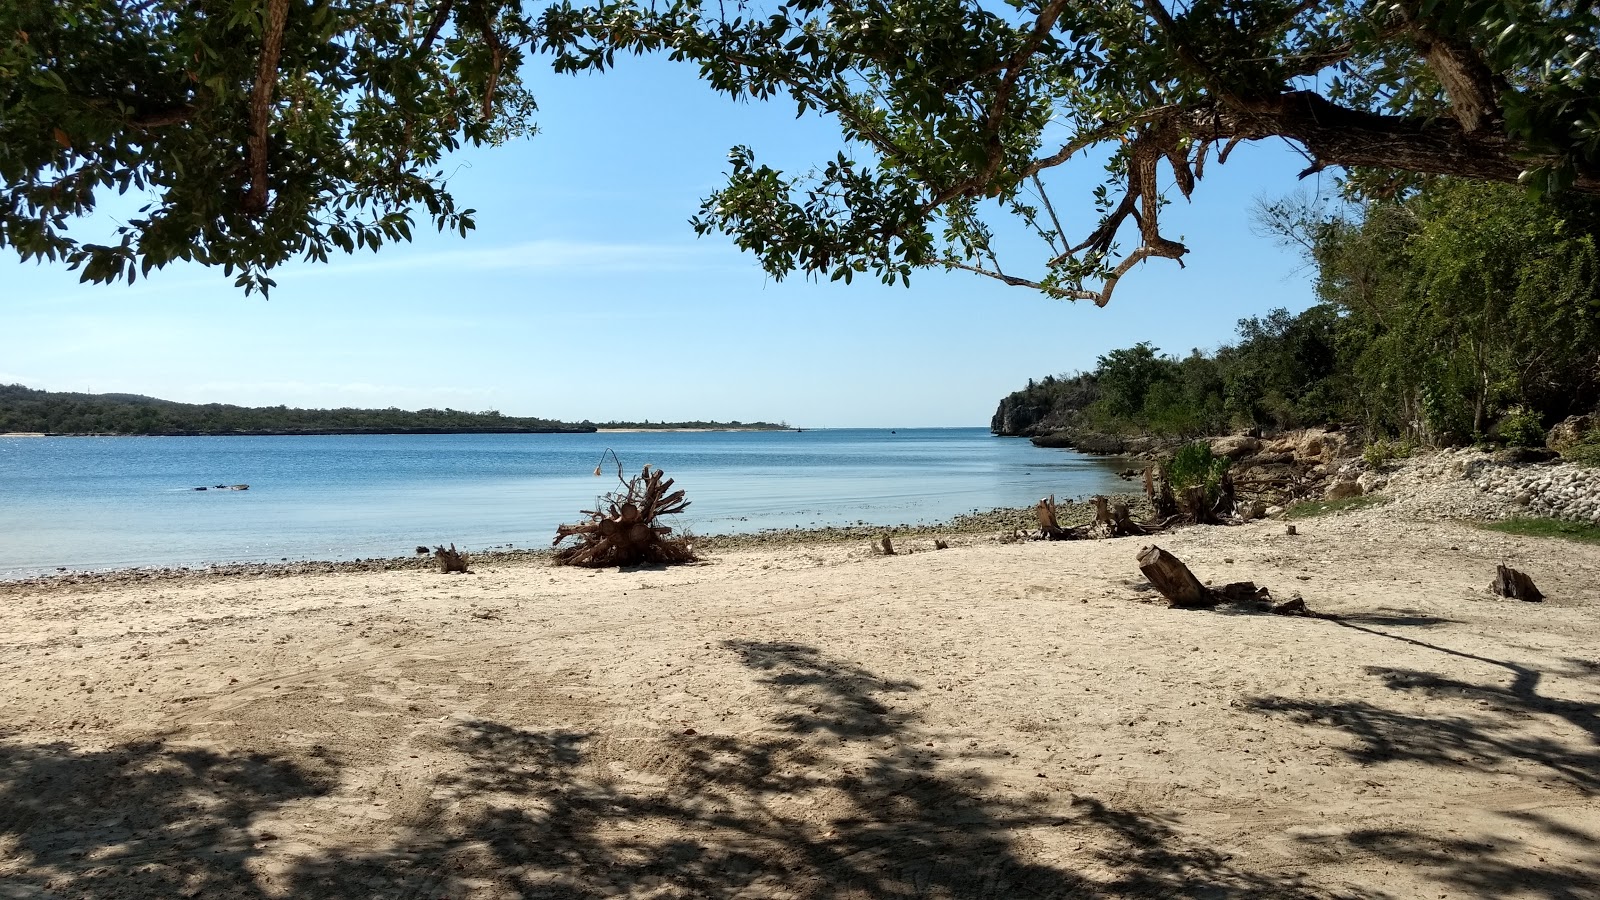 Fotografie cu Playa La Guanas cu o suprafață de apa turcoaz